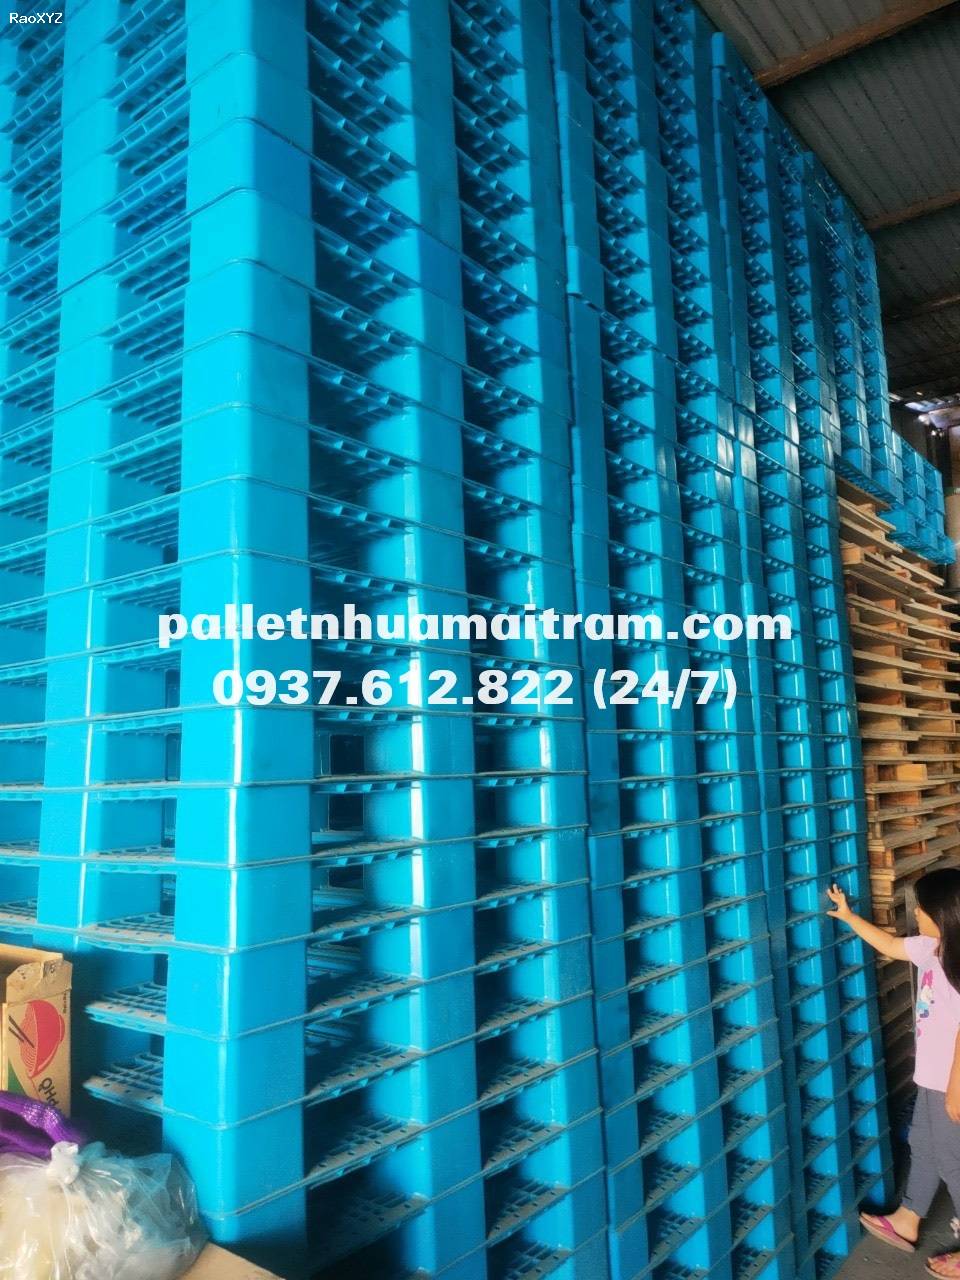 Đại lý cung cấp pallet nhựa tại Lâm Đồng uy tín, chất lượng cao